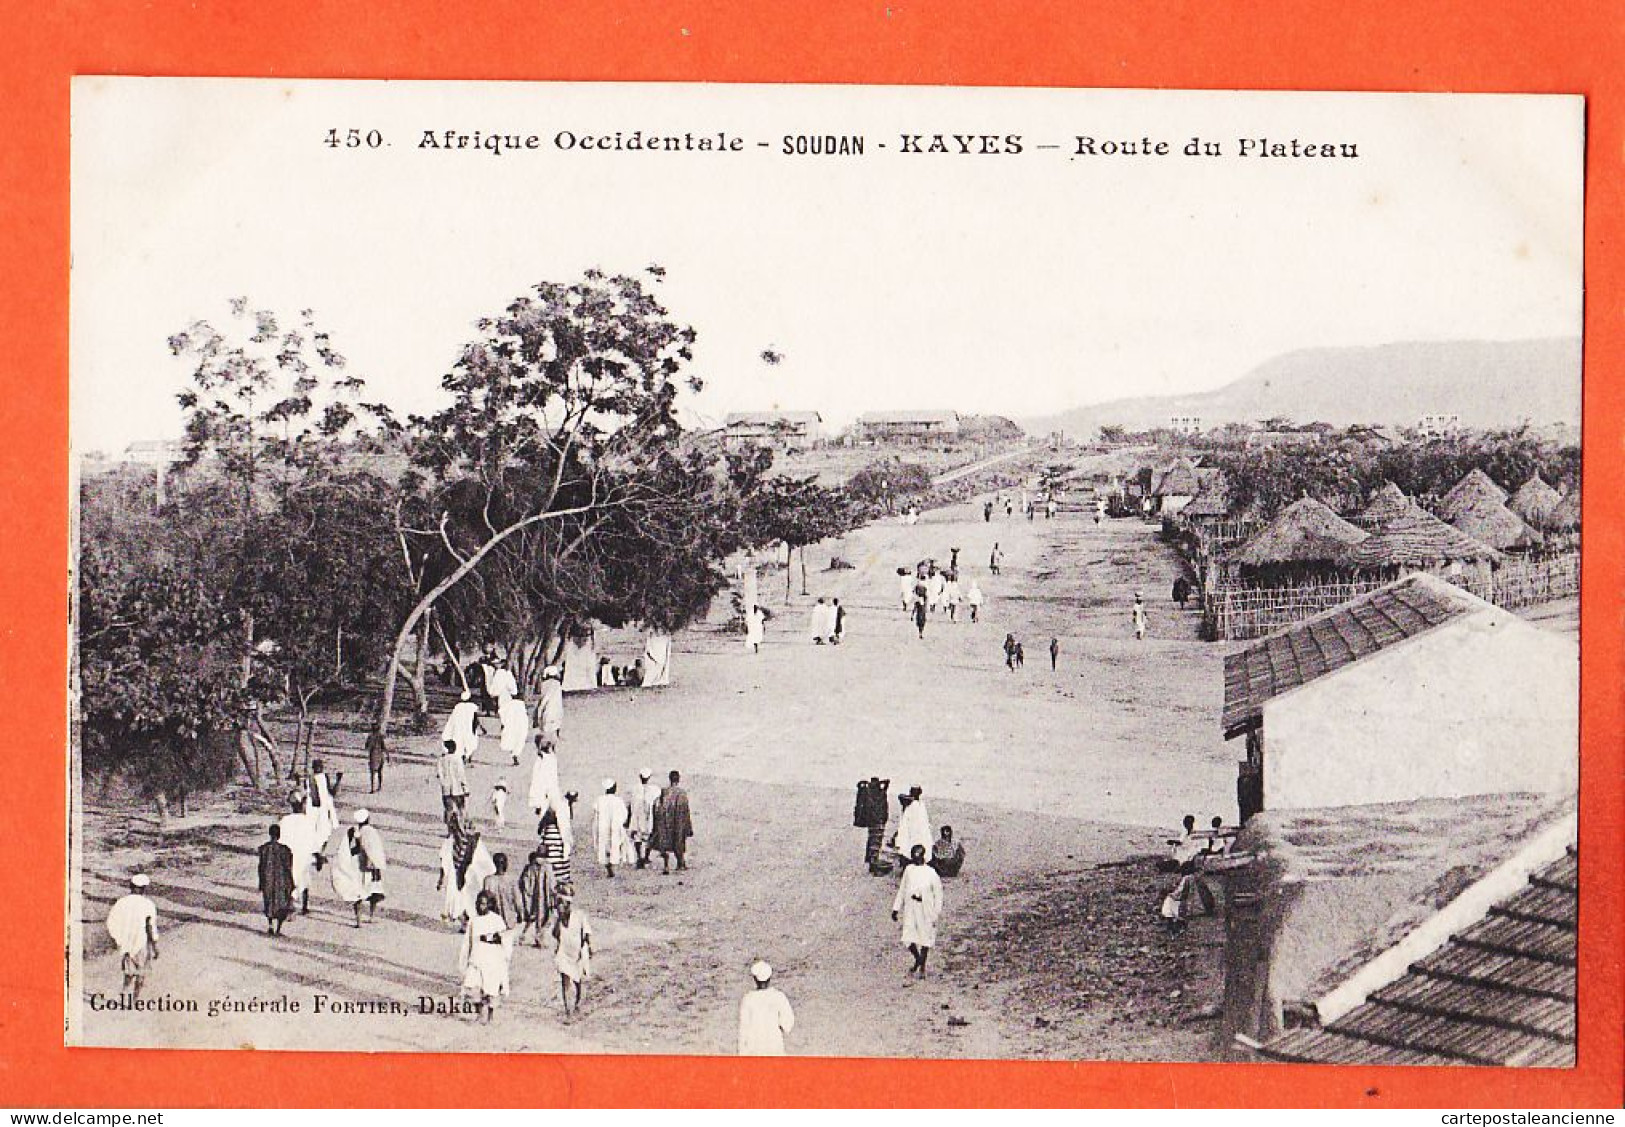 32977 / ⭐ KAYES Soudan (•◡•) Route Du Plateau 1910s ◉ Collection Generale FORTIER Dakar 450 Afrique Occidentale - Soudan